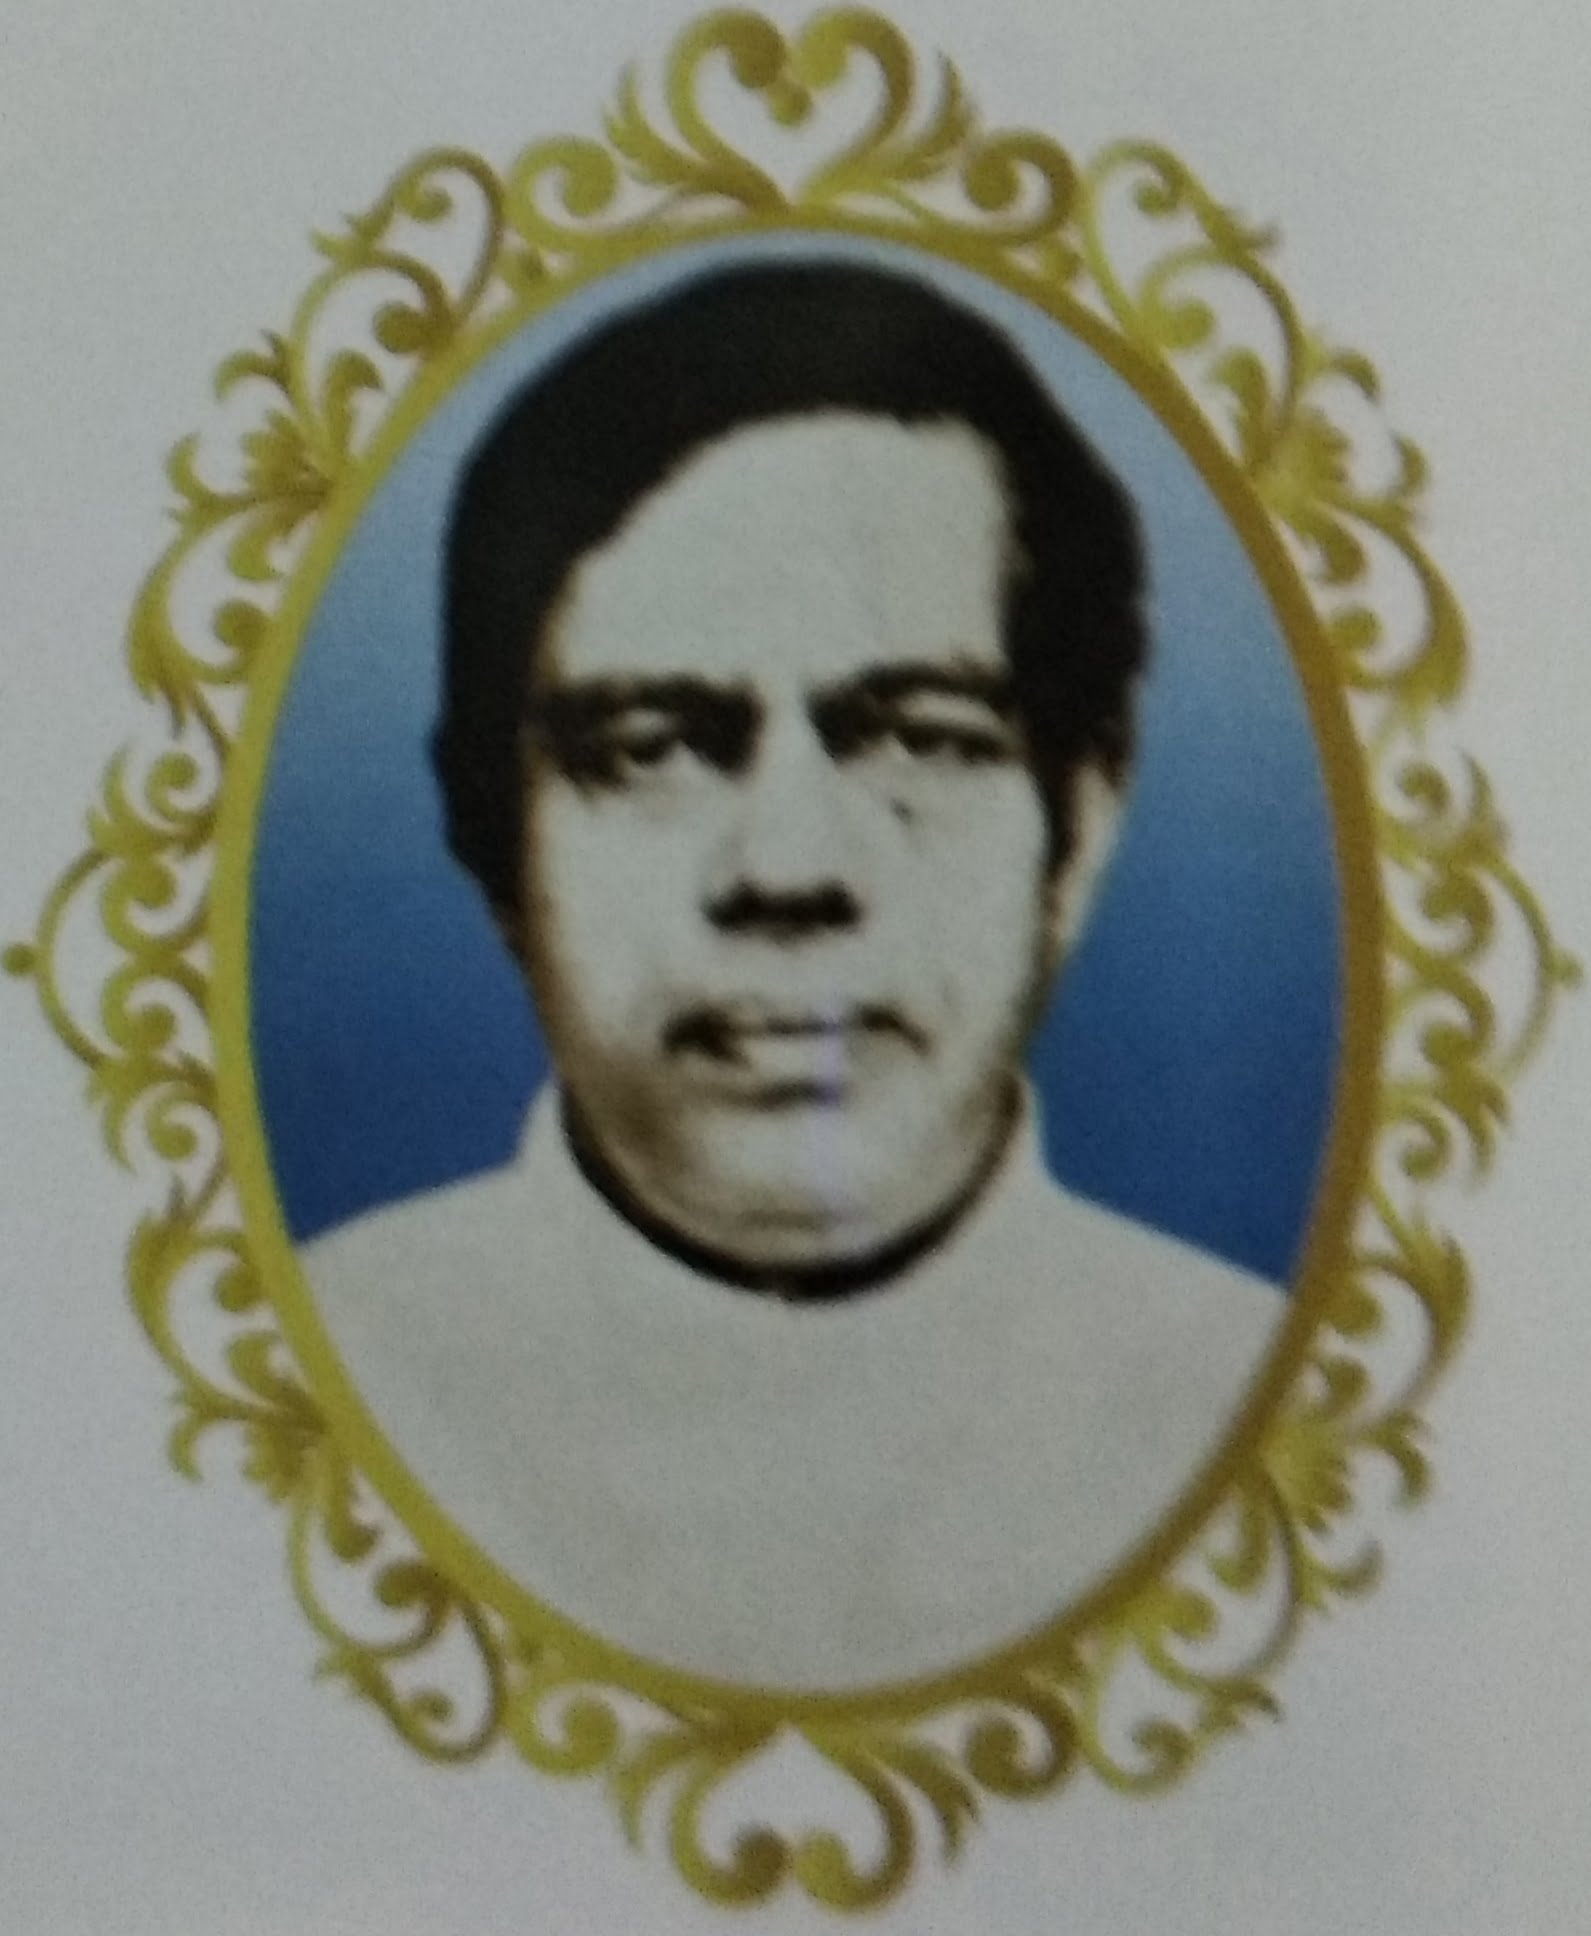 Fr. Varghese Valavanthara